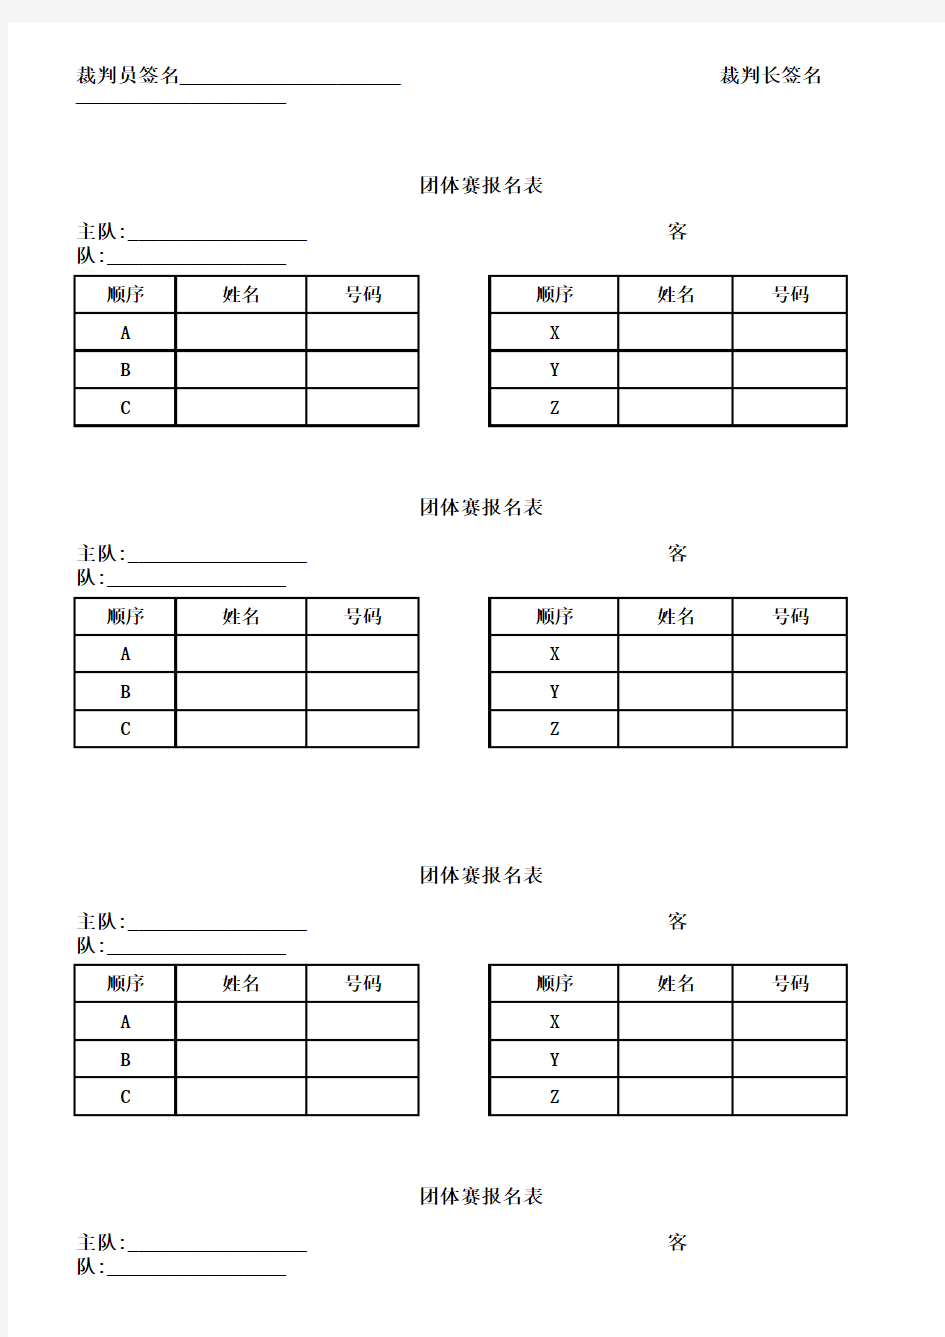 乒乓球团体赛记分表